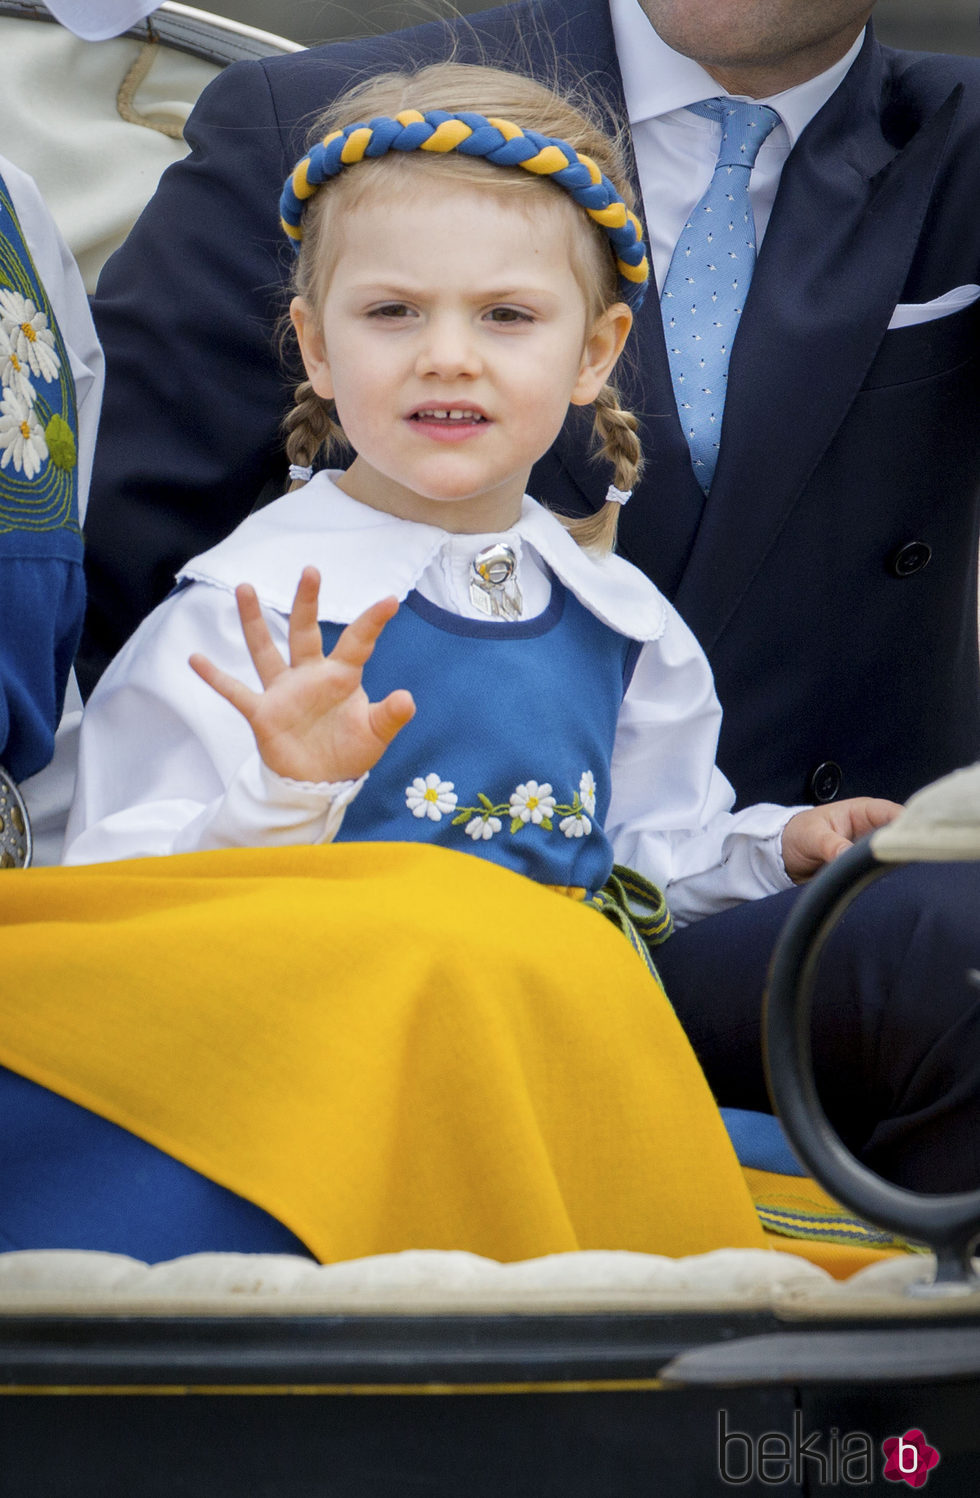 Estela de Suecia en el Día Nacional de Suecia 2016